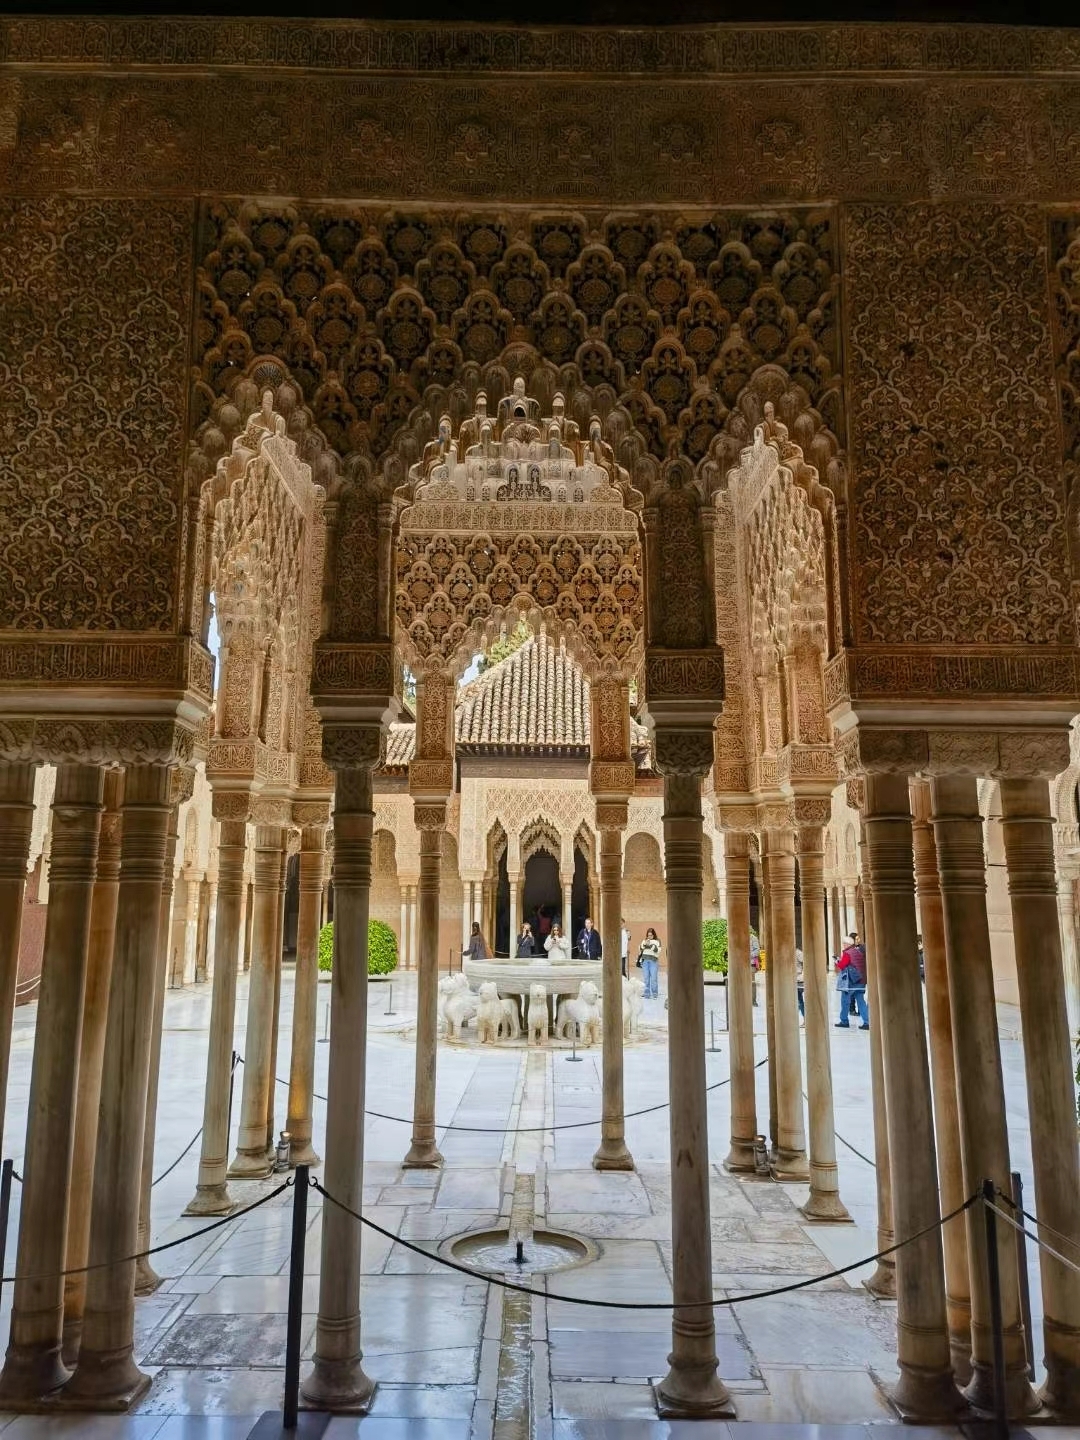 阿尔罕布拉宫，为中世纪摩尔人在西班牙建立的格拉纳达王国的王宫。“阿尔罕布拉”，阿拉伯语意为“红堡”。